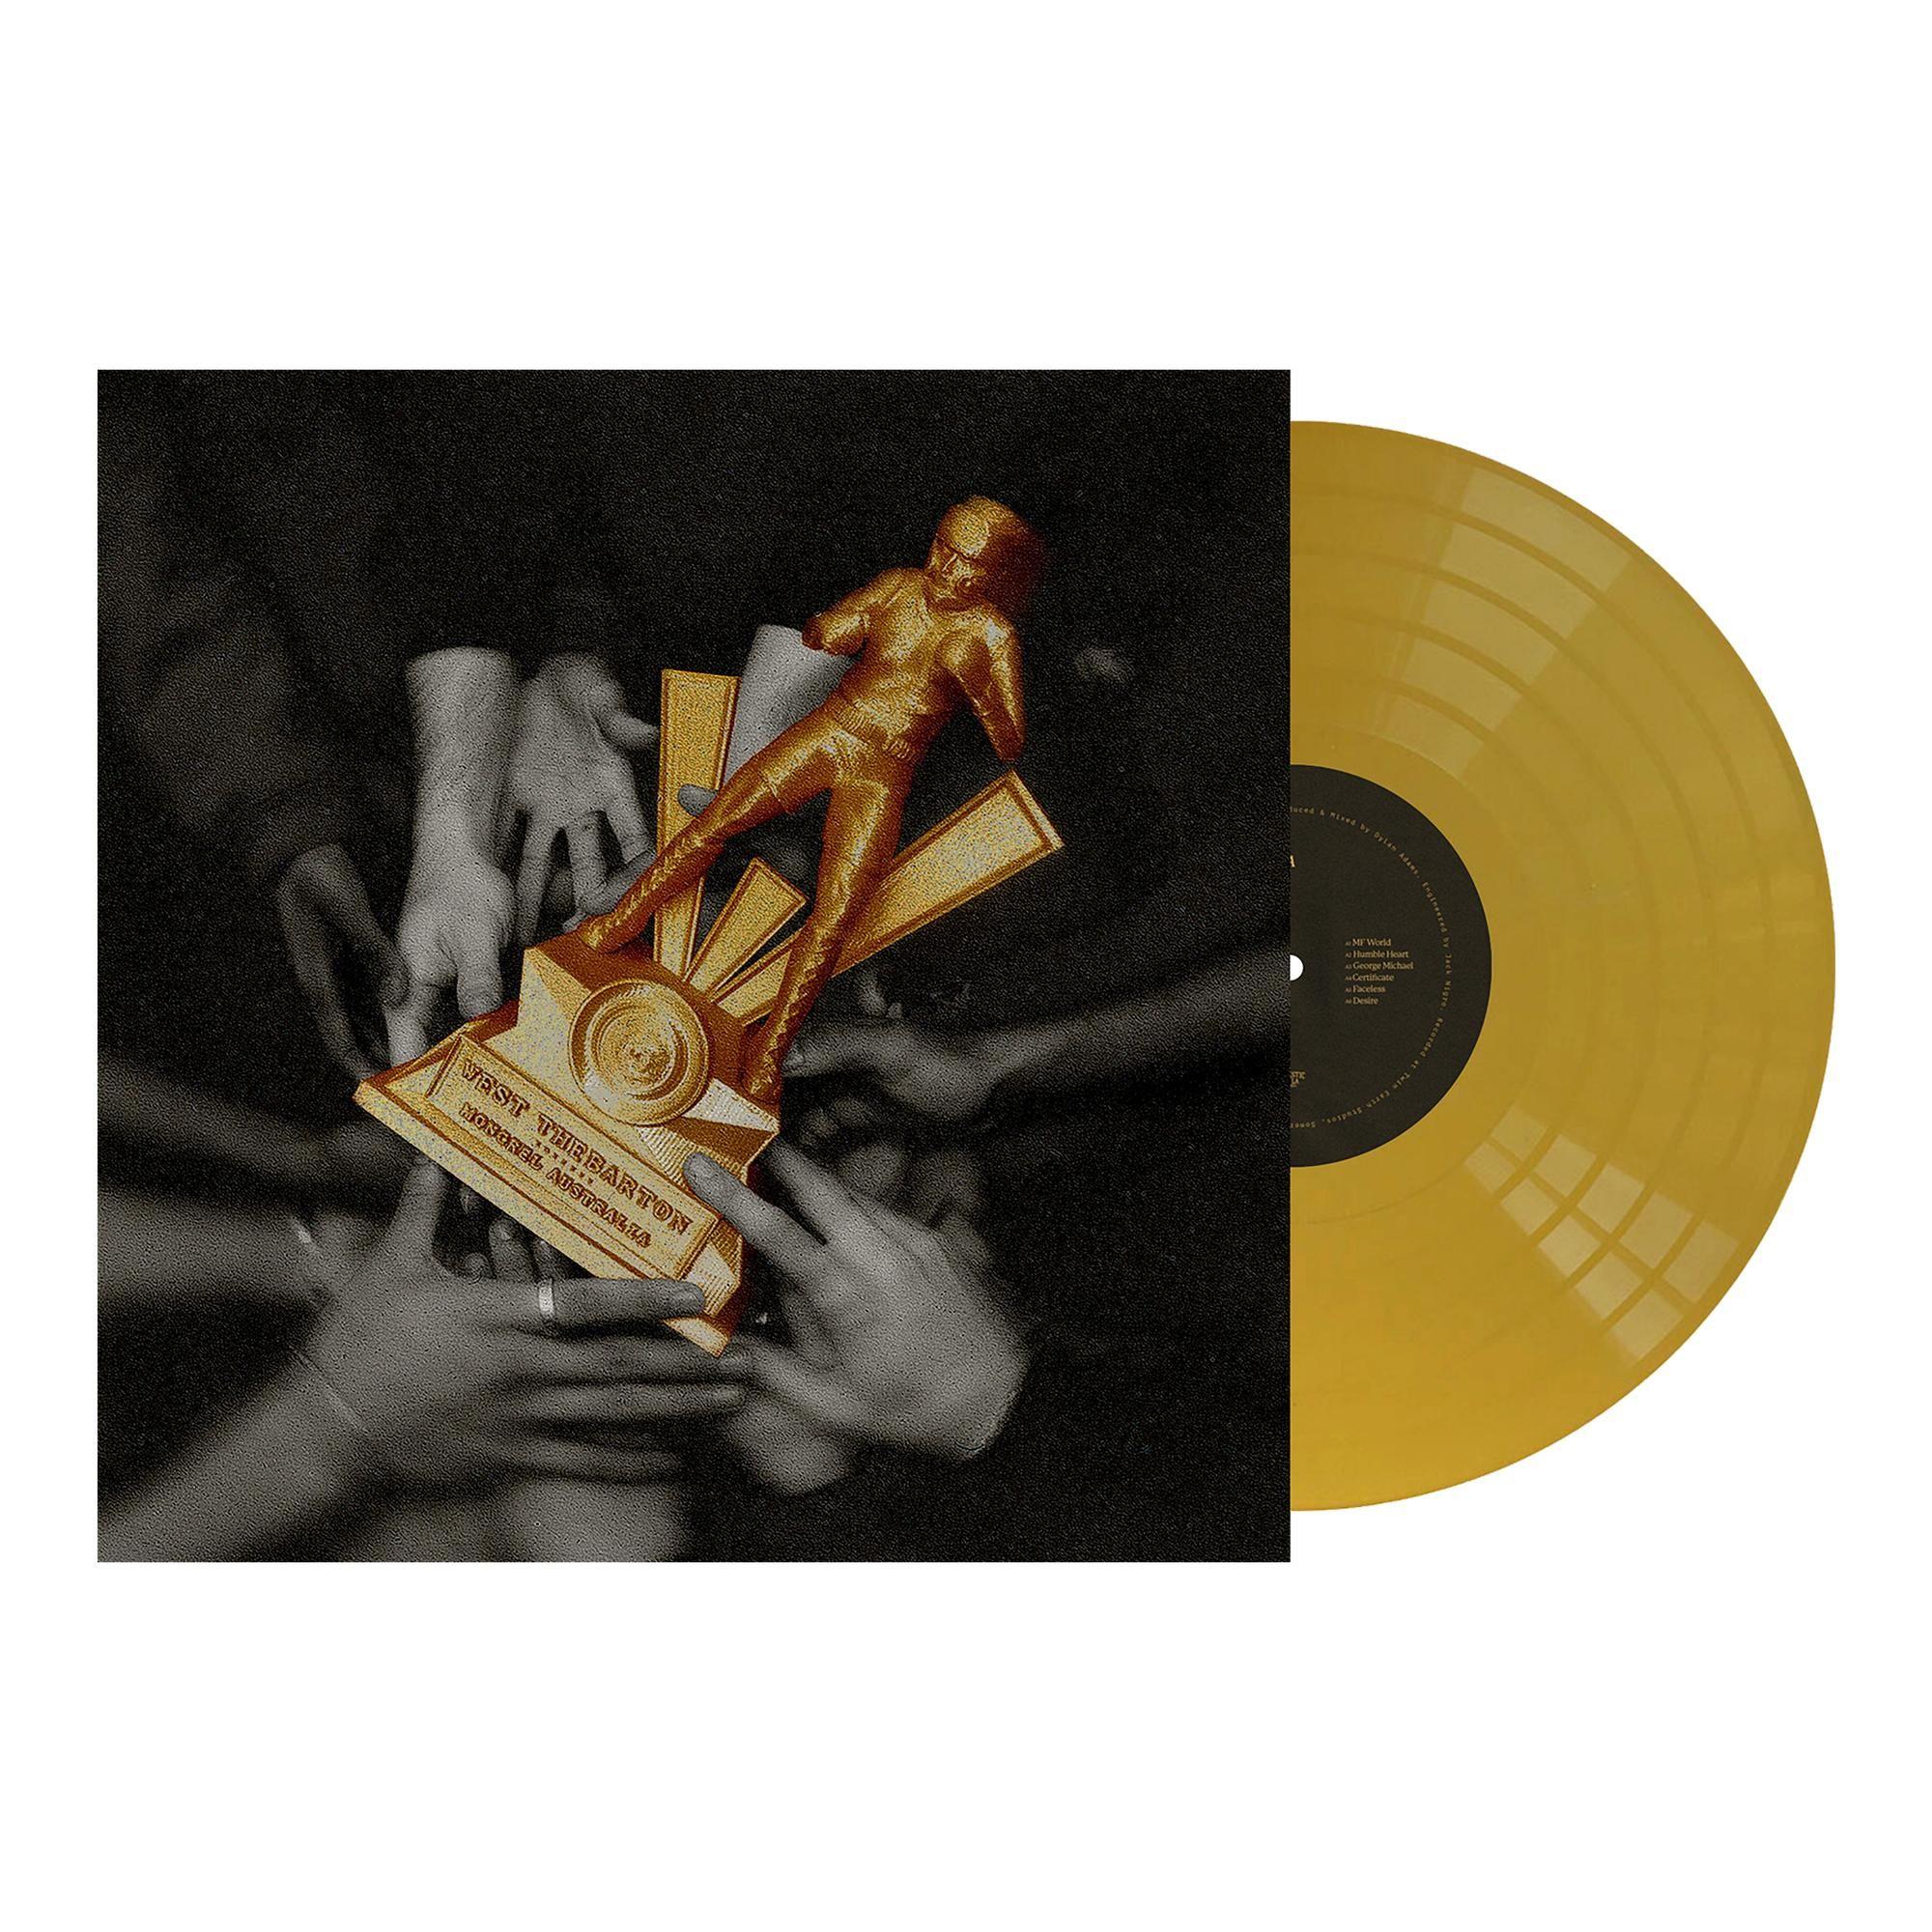 mongrel australia (gold vinyl)